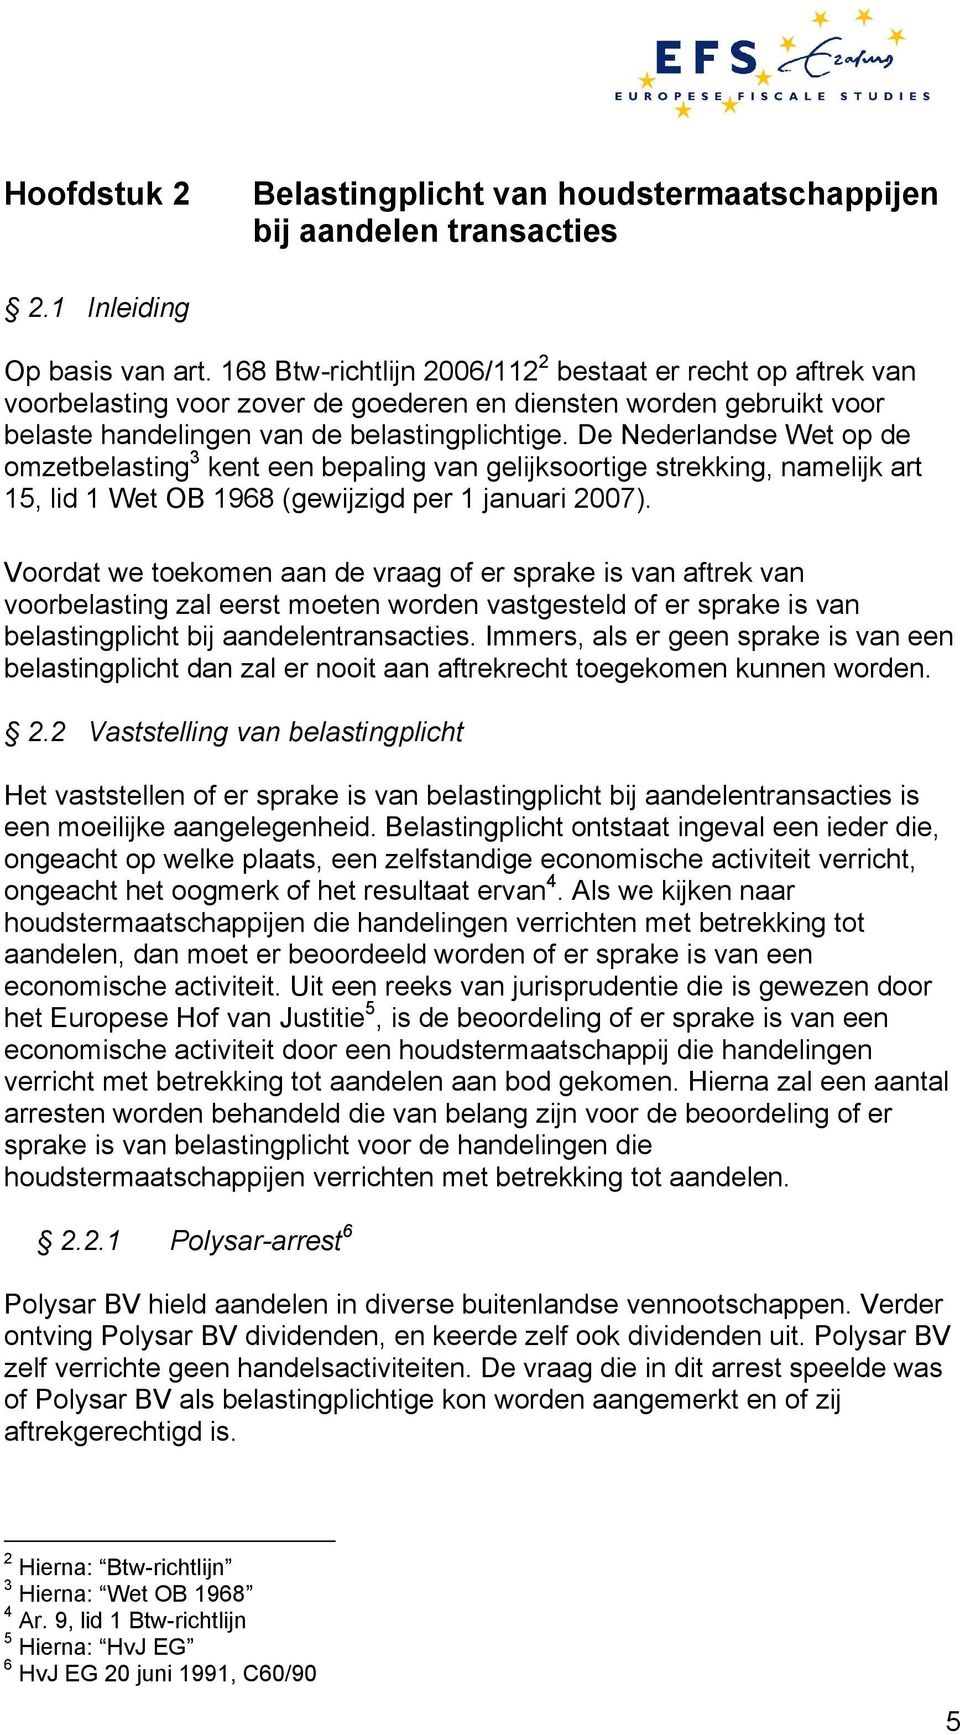 De Nederlandse Wet op de omzetbelasting 3 kent een bepaling van gelijksoortige strekking, namelijk art 15, lid 1 Wet OB 1968 (gewijzigd per 1 januari 2007).